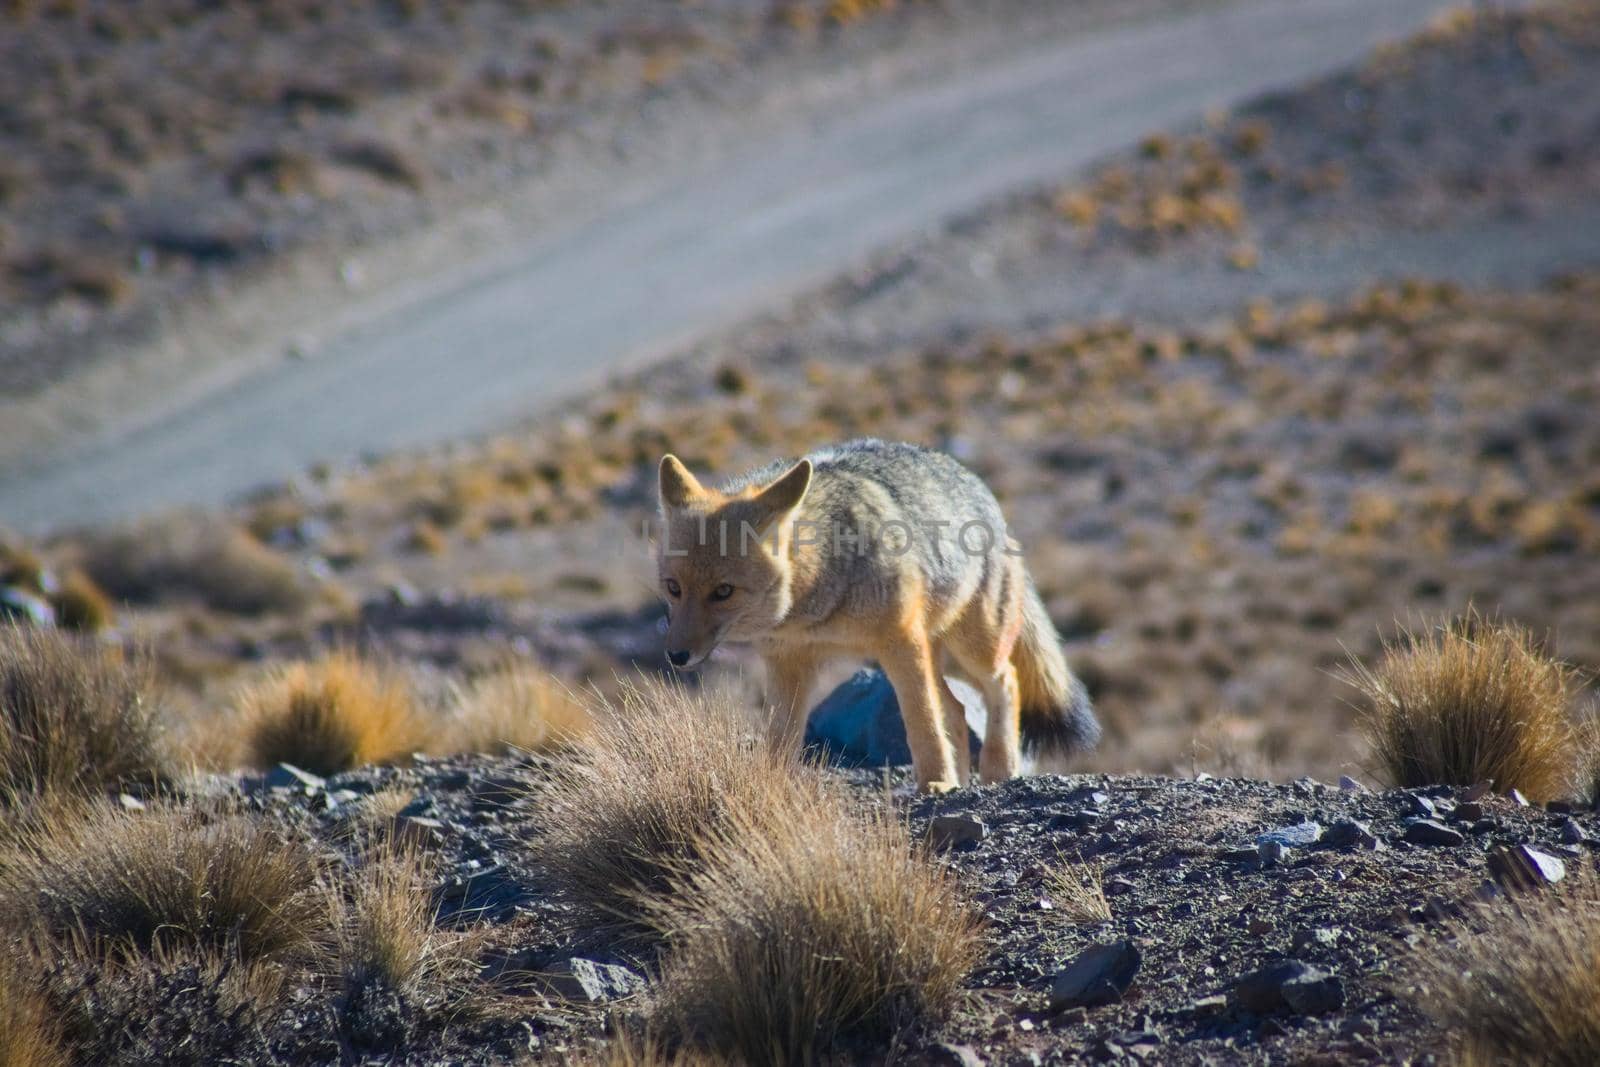 Andean fox, also known as culpeo (Lycalopex culpaeus) spotted in Villavicencio natural reserve, Mendoza, Argentina.